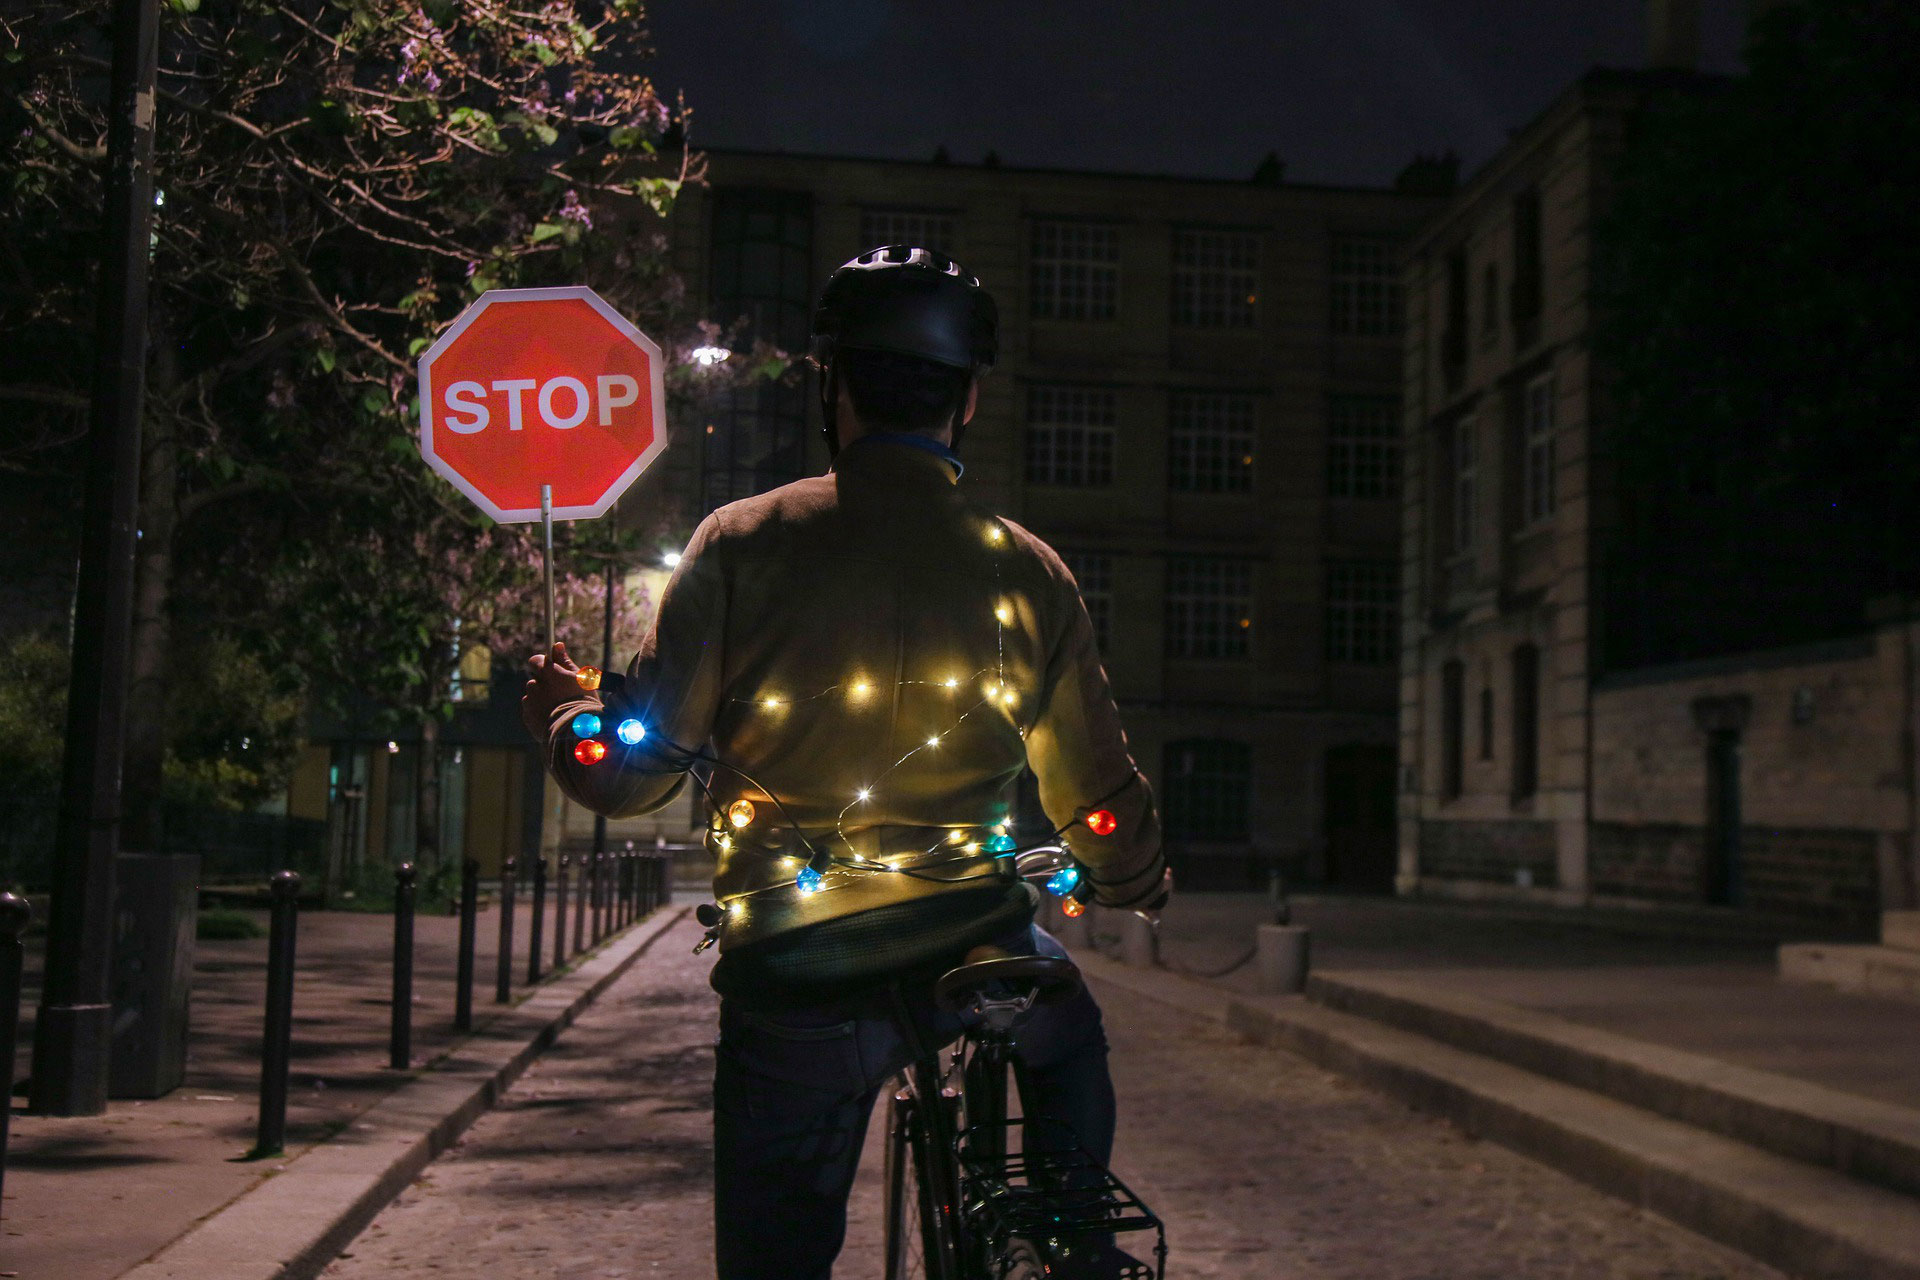 In der Dämmerung auf dem Fahrrad: Licht an und Warnweste überziehen -  VeloTOTAL - Aktuelle News rund um das Thema Fahrrad